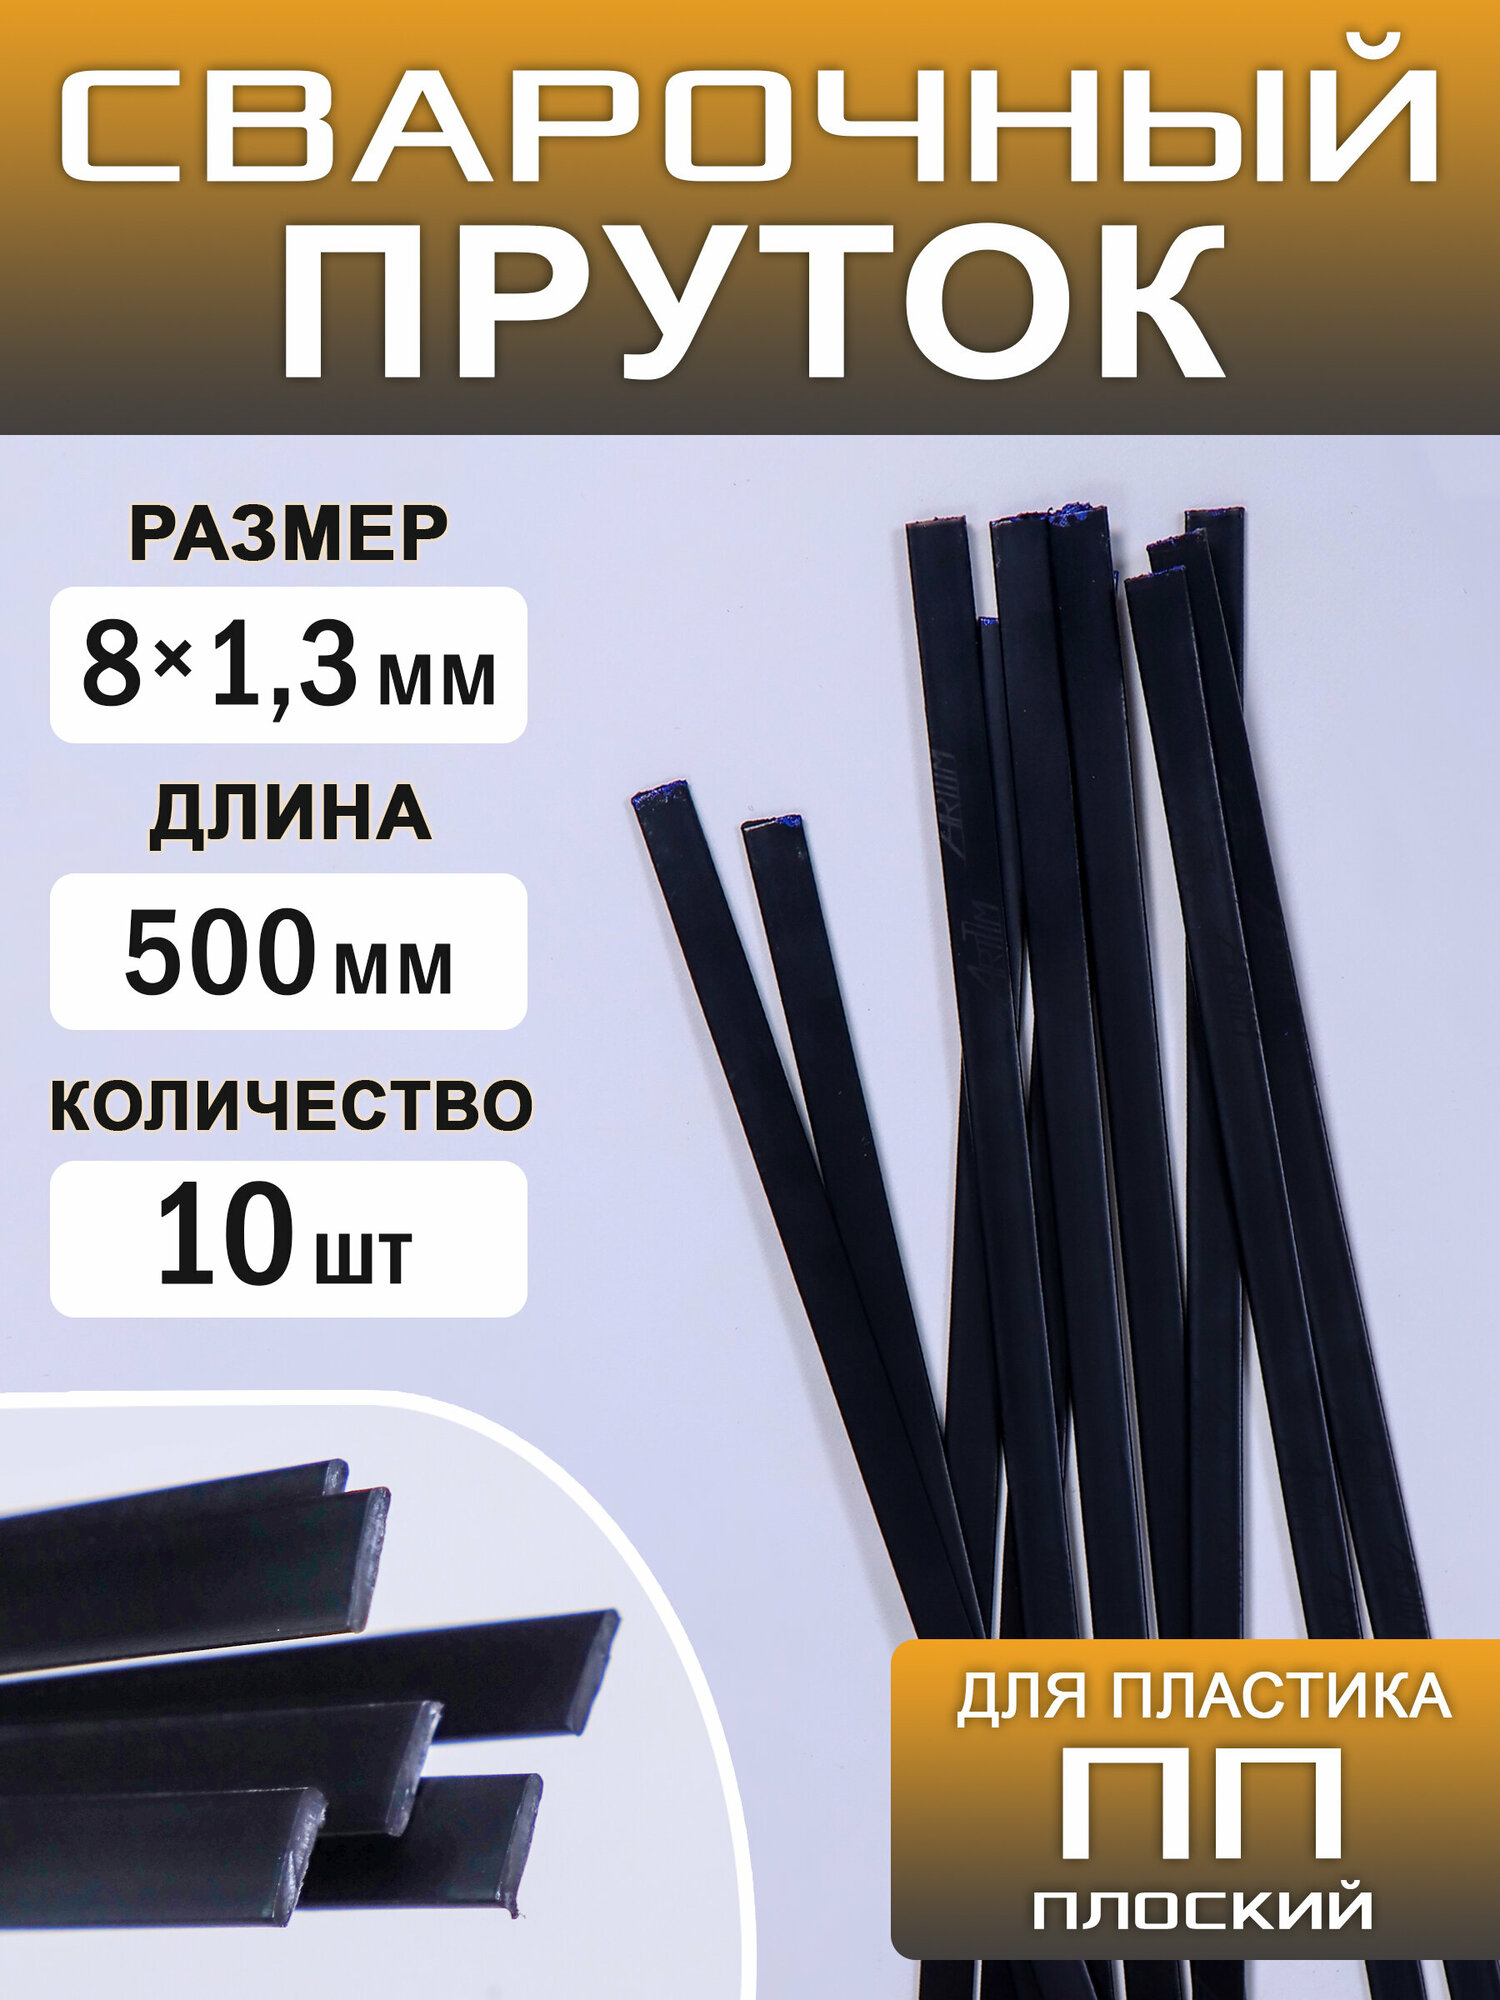 Сварочный пруток пластиковый, плоский, ПП (PP), 10 штук, 500х8х1,3 мм, ArtTim